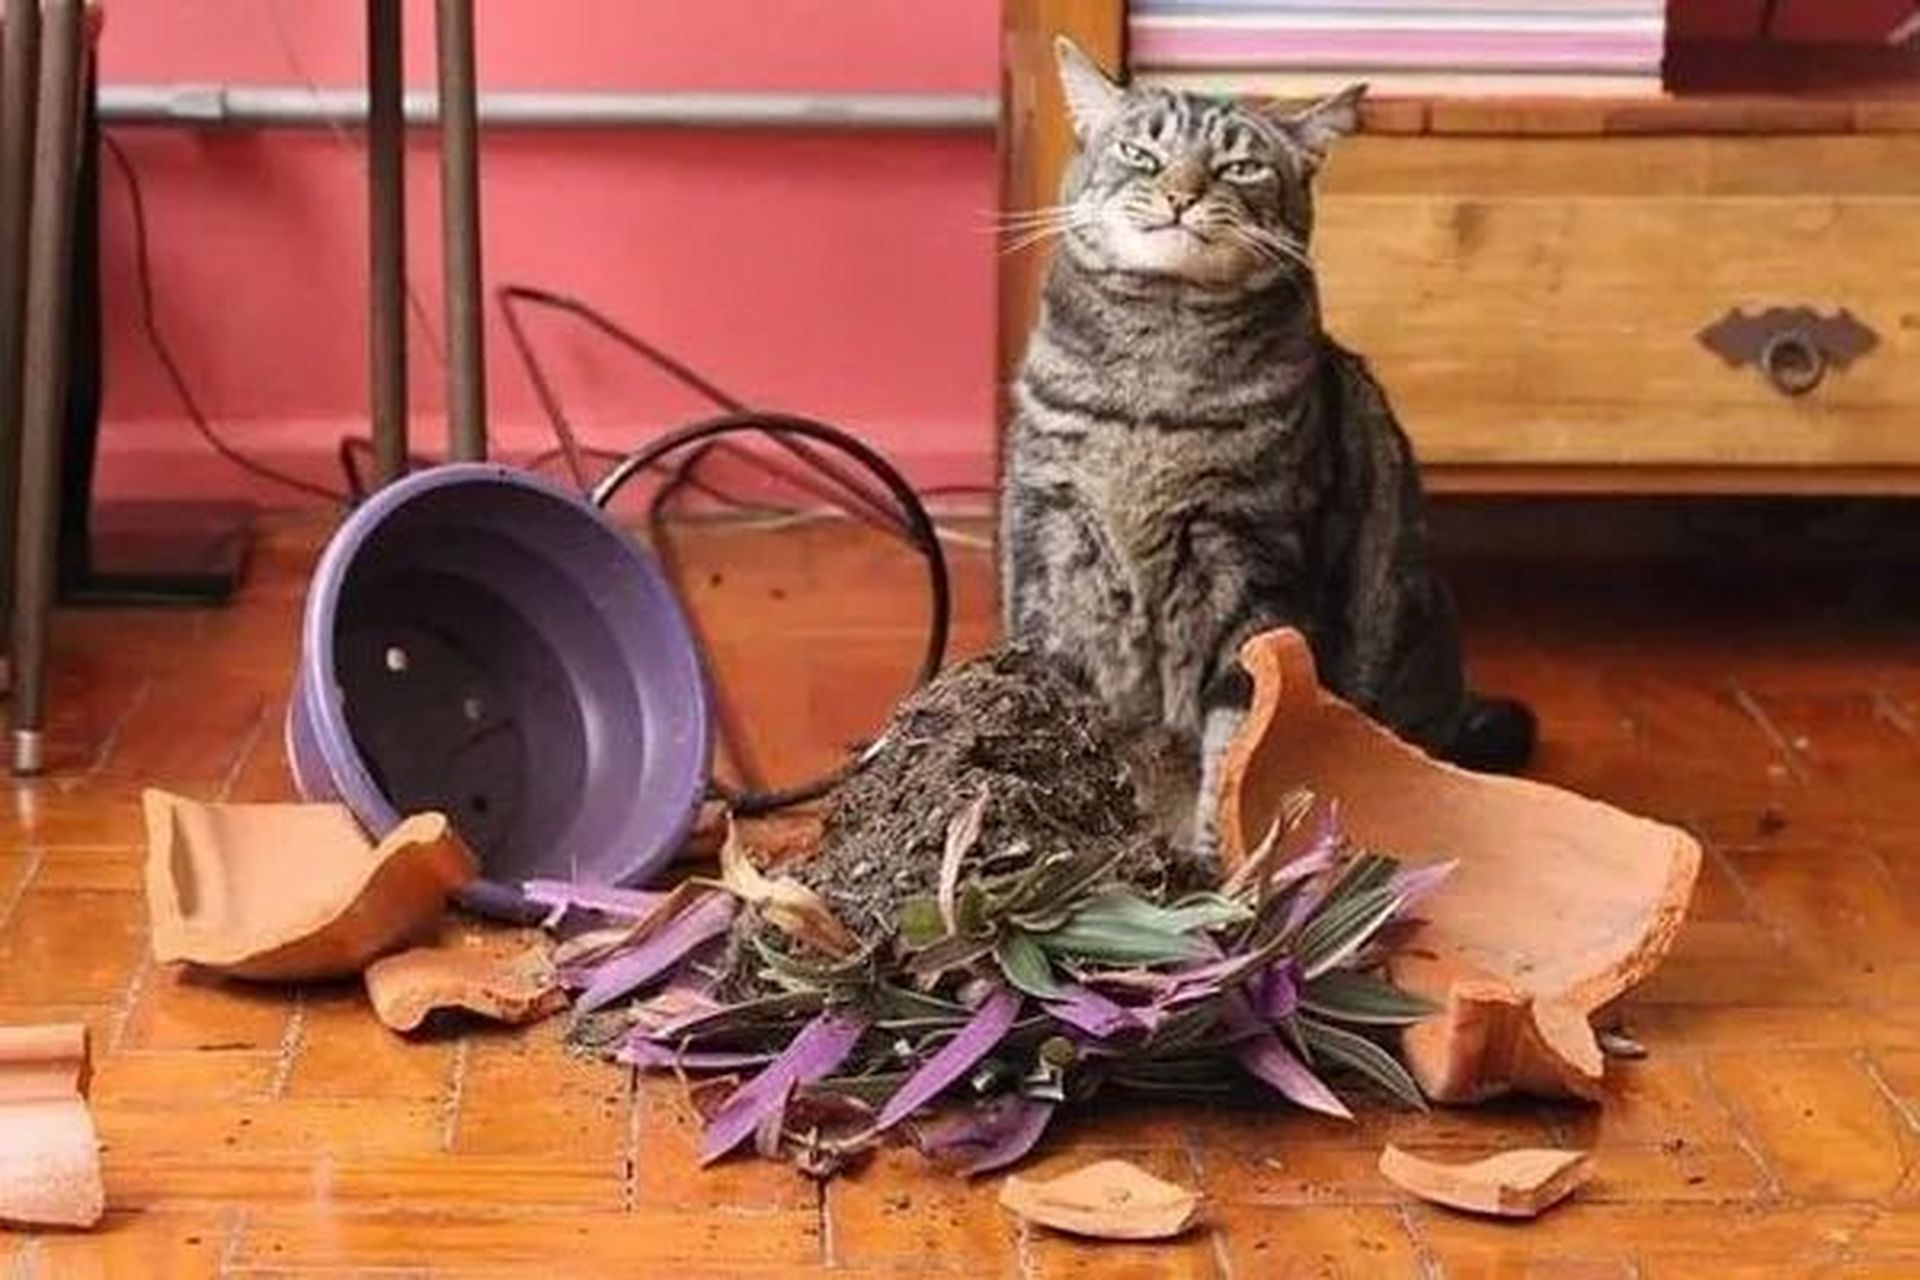 猫咪打碎花盆,还一脸嚣张地看着铲屎官 小朋友做错事会是什么样子?